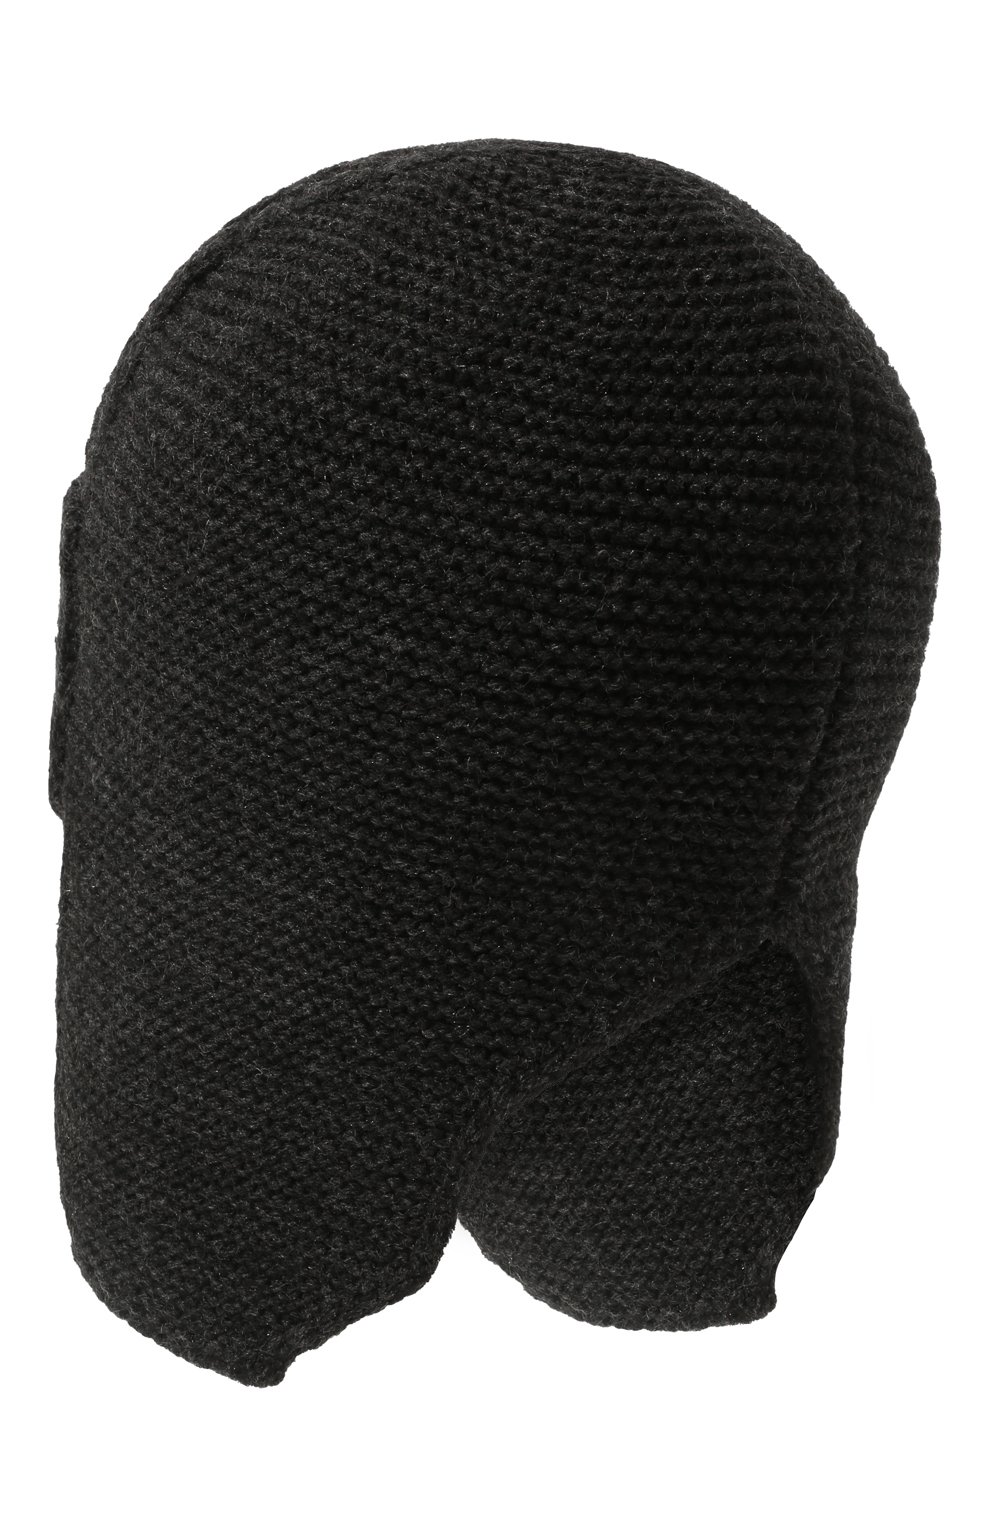 Мужская шапка-ушанка bright CANOE темно-серого цвета, арт. 3447928 | Фото 2 (Материал: Текстиль, Шерсть, Синтетический материал; Кросс-КТ: Трикотаж)